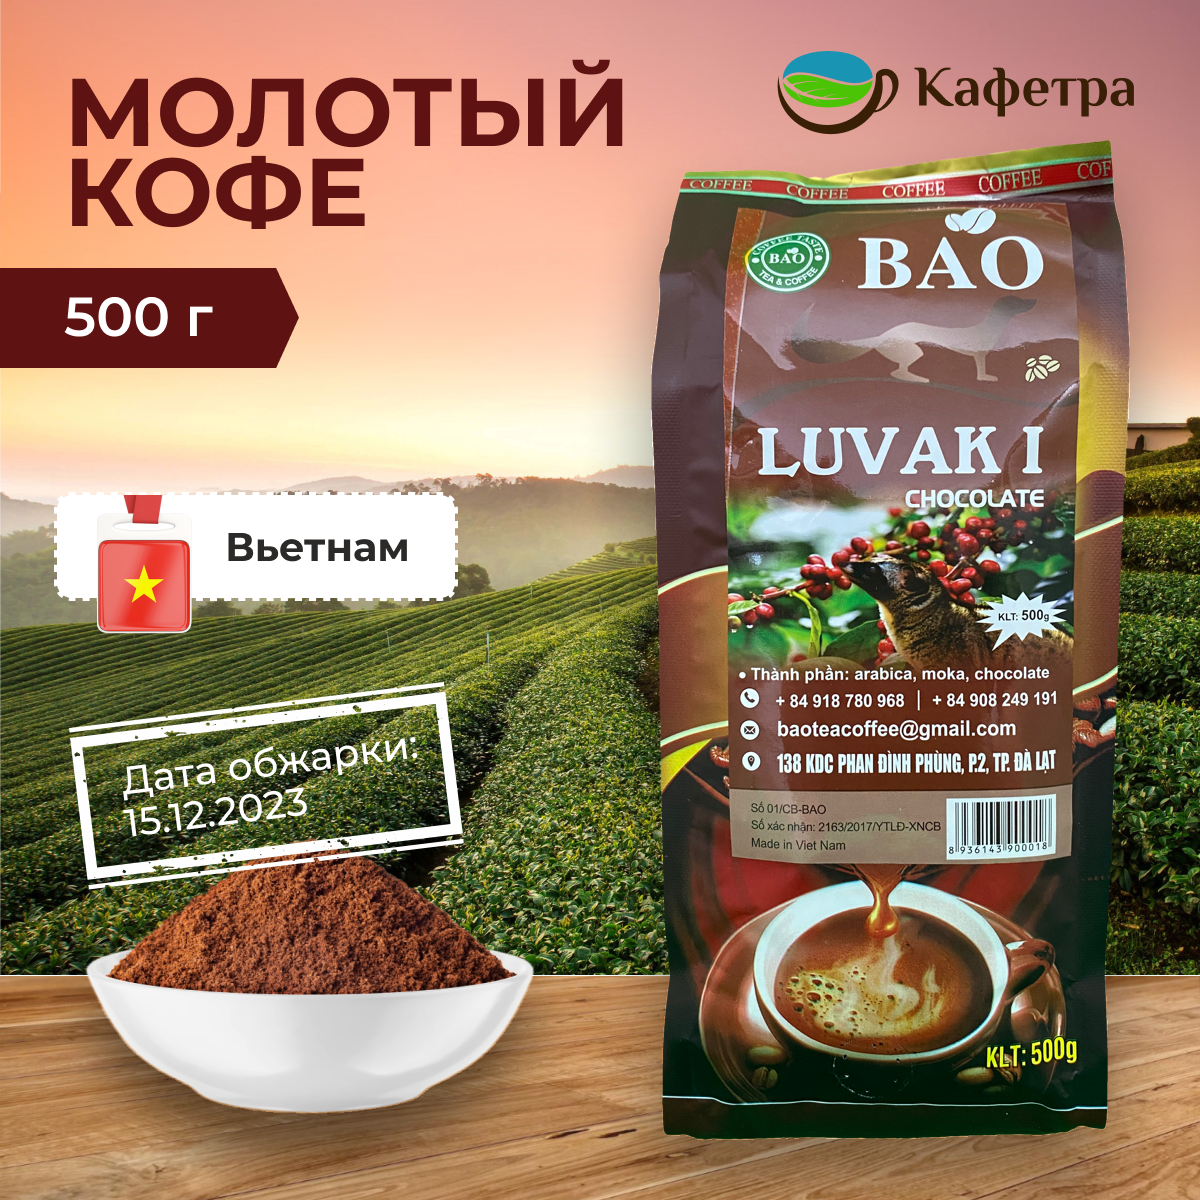 Вьетнамский кофе молотый Шоколадный Лювак Ай (Chocolate Luvak I) - BAO - 500г